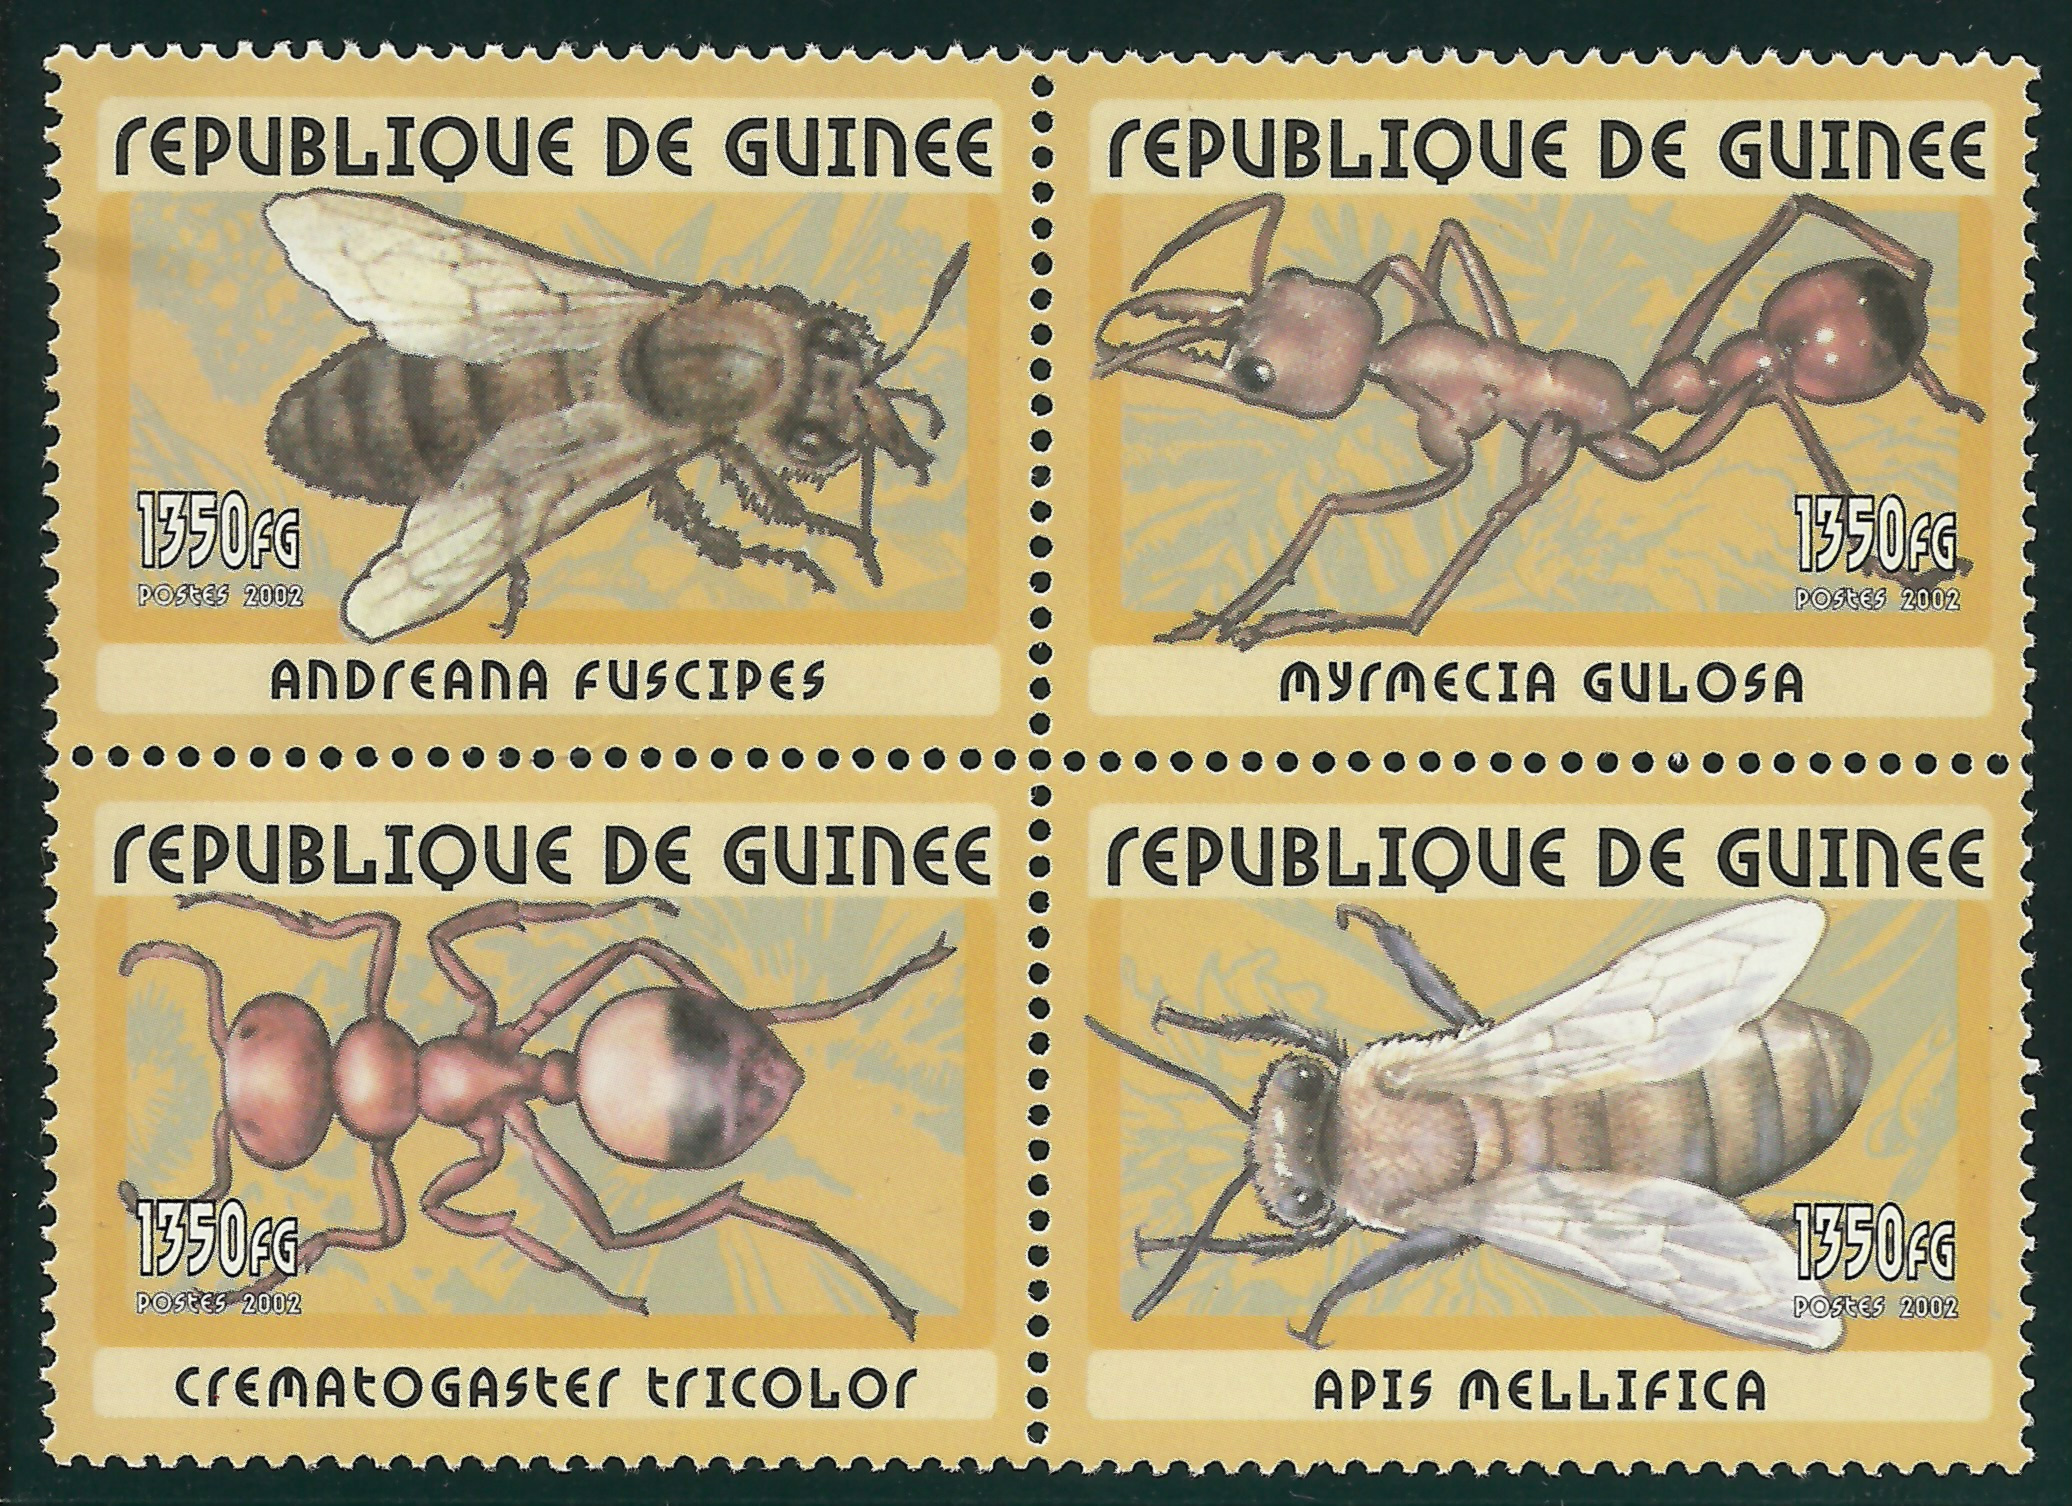 Republica Guinea 2002. 2 hormigas y 2 abejas